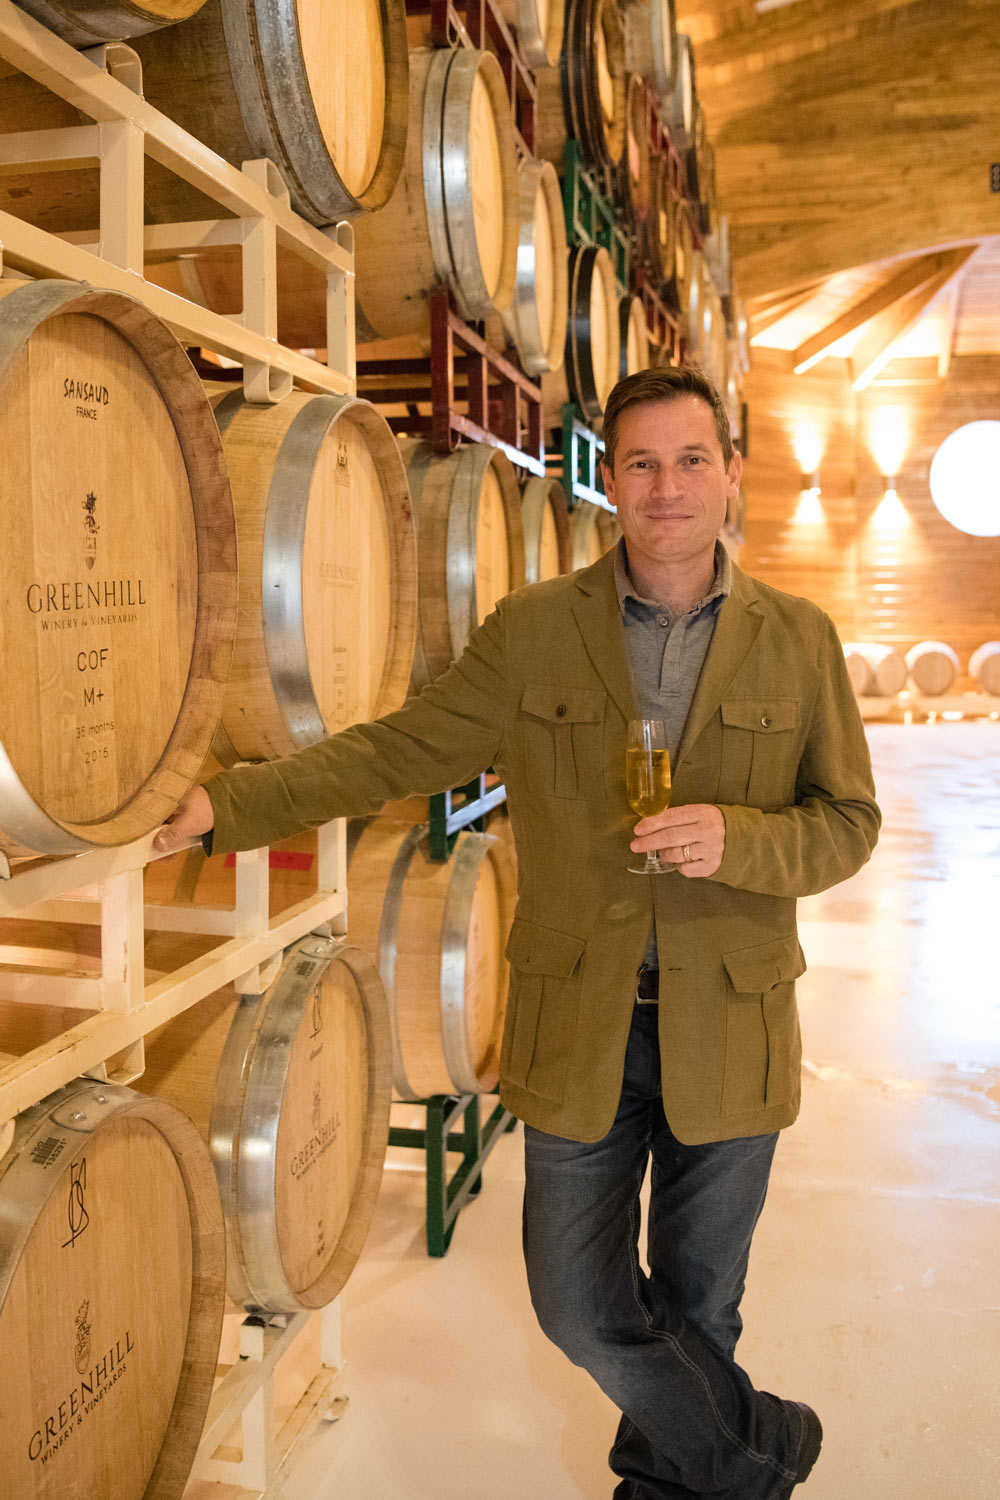 Greenhill winemaker Sébastien Marquet in the new barrel room.